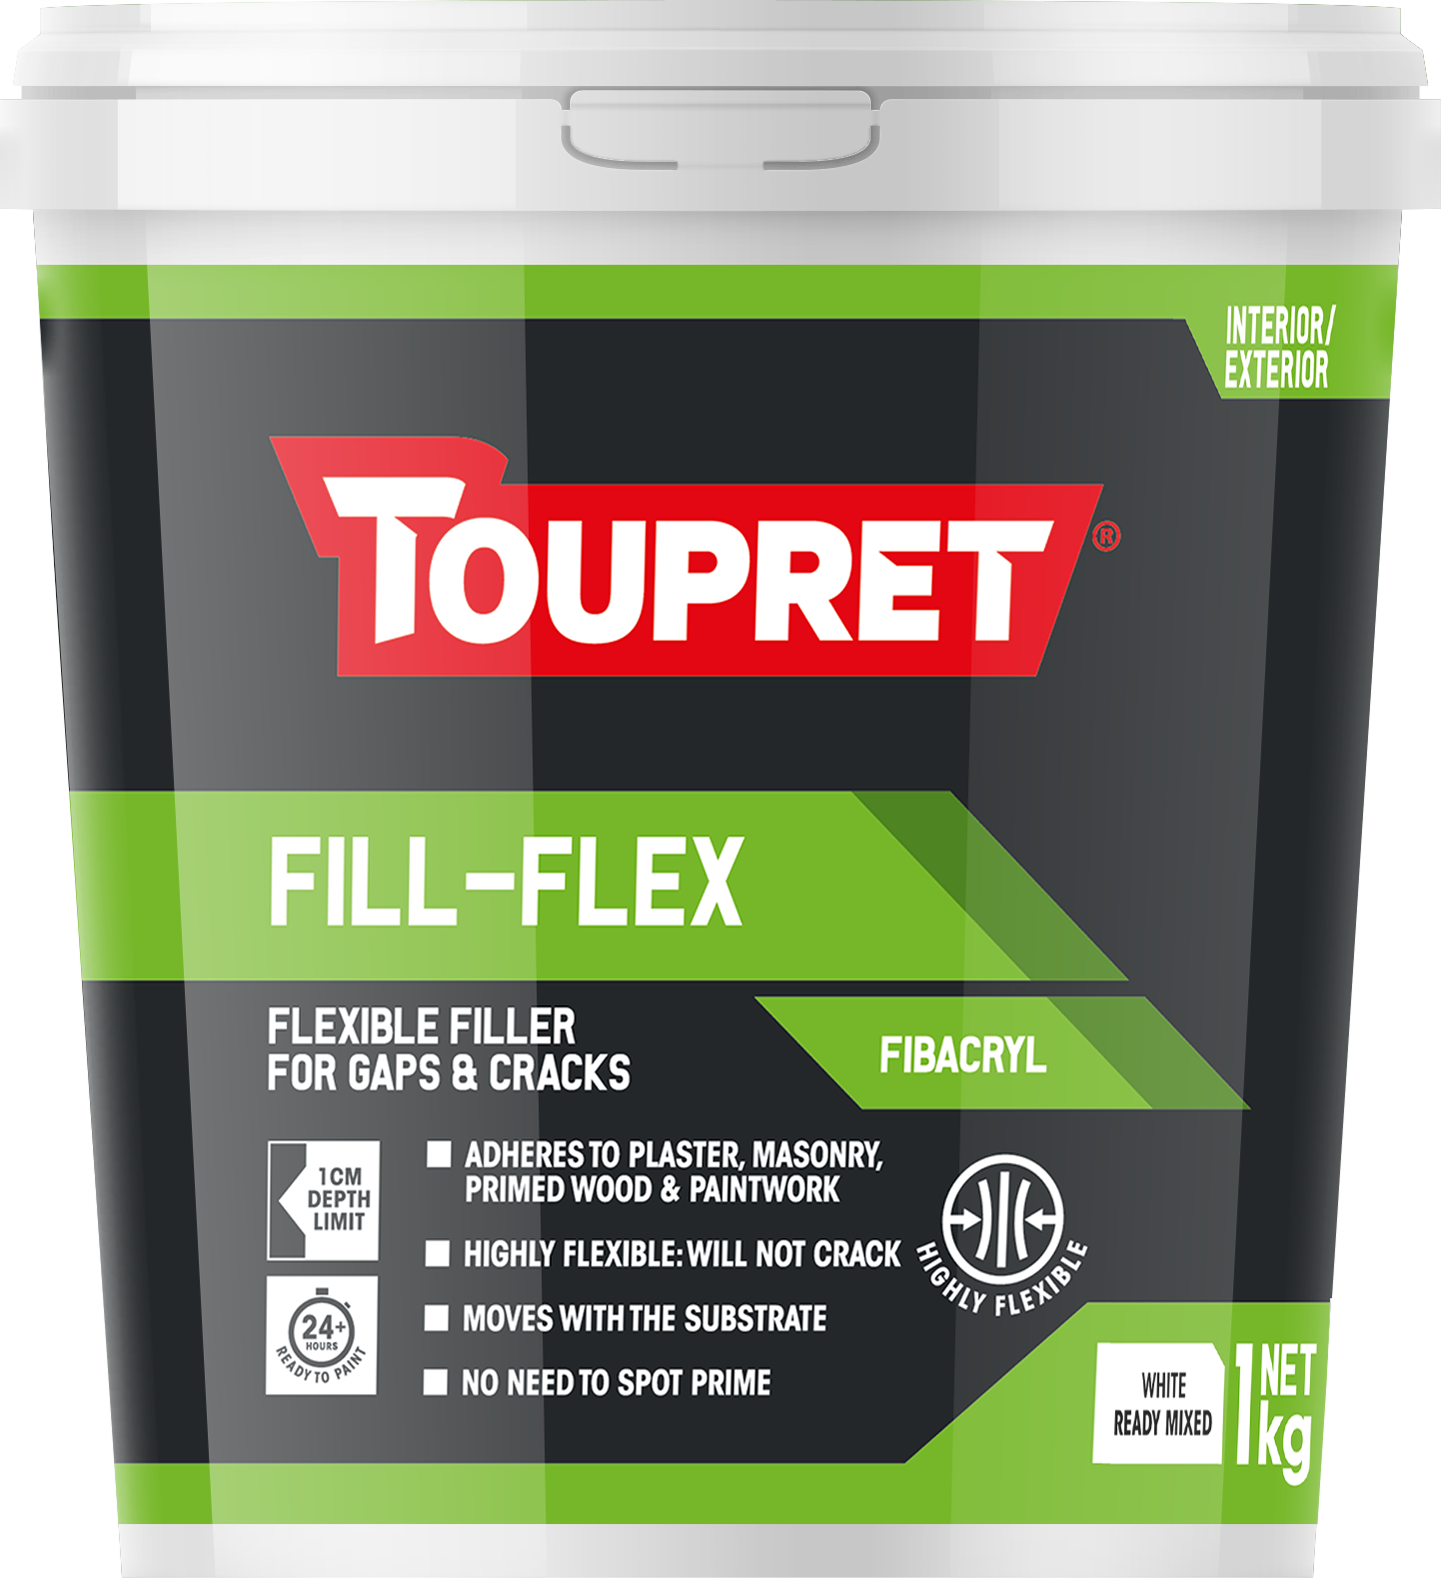 Toupret Fill Flex - Fibacryl